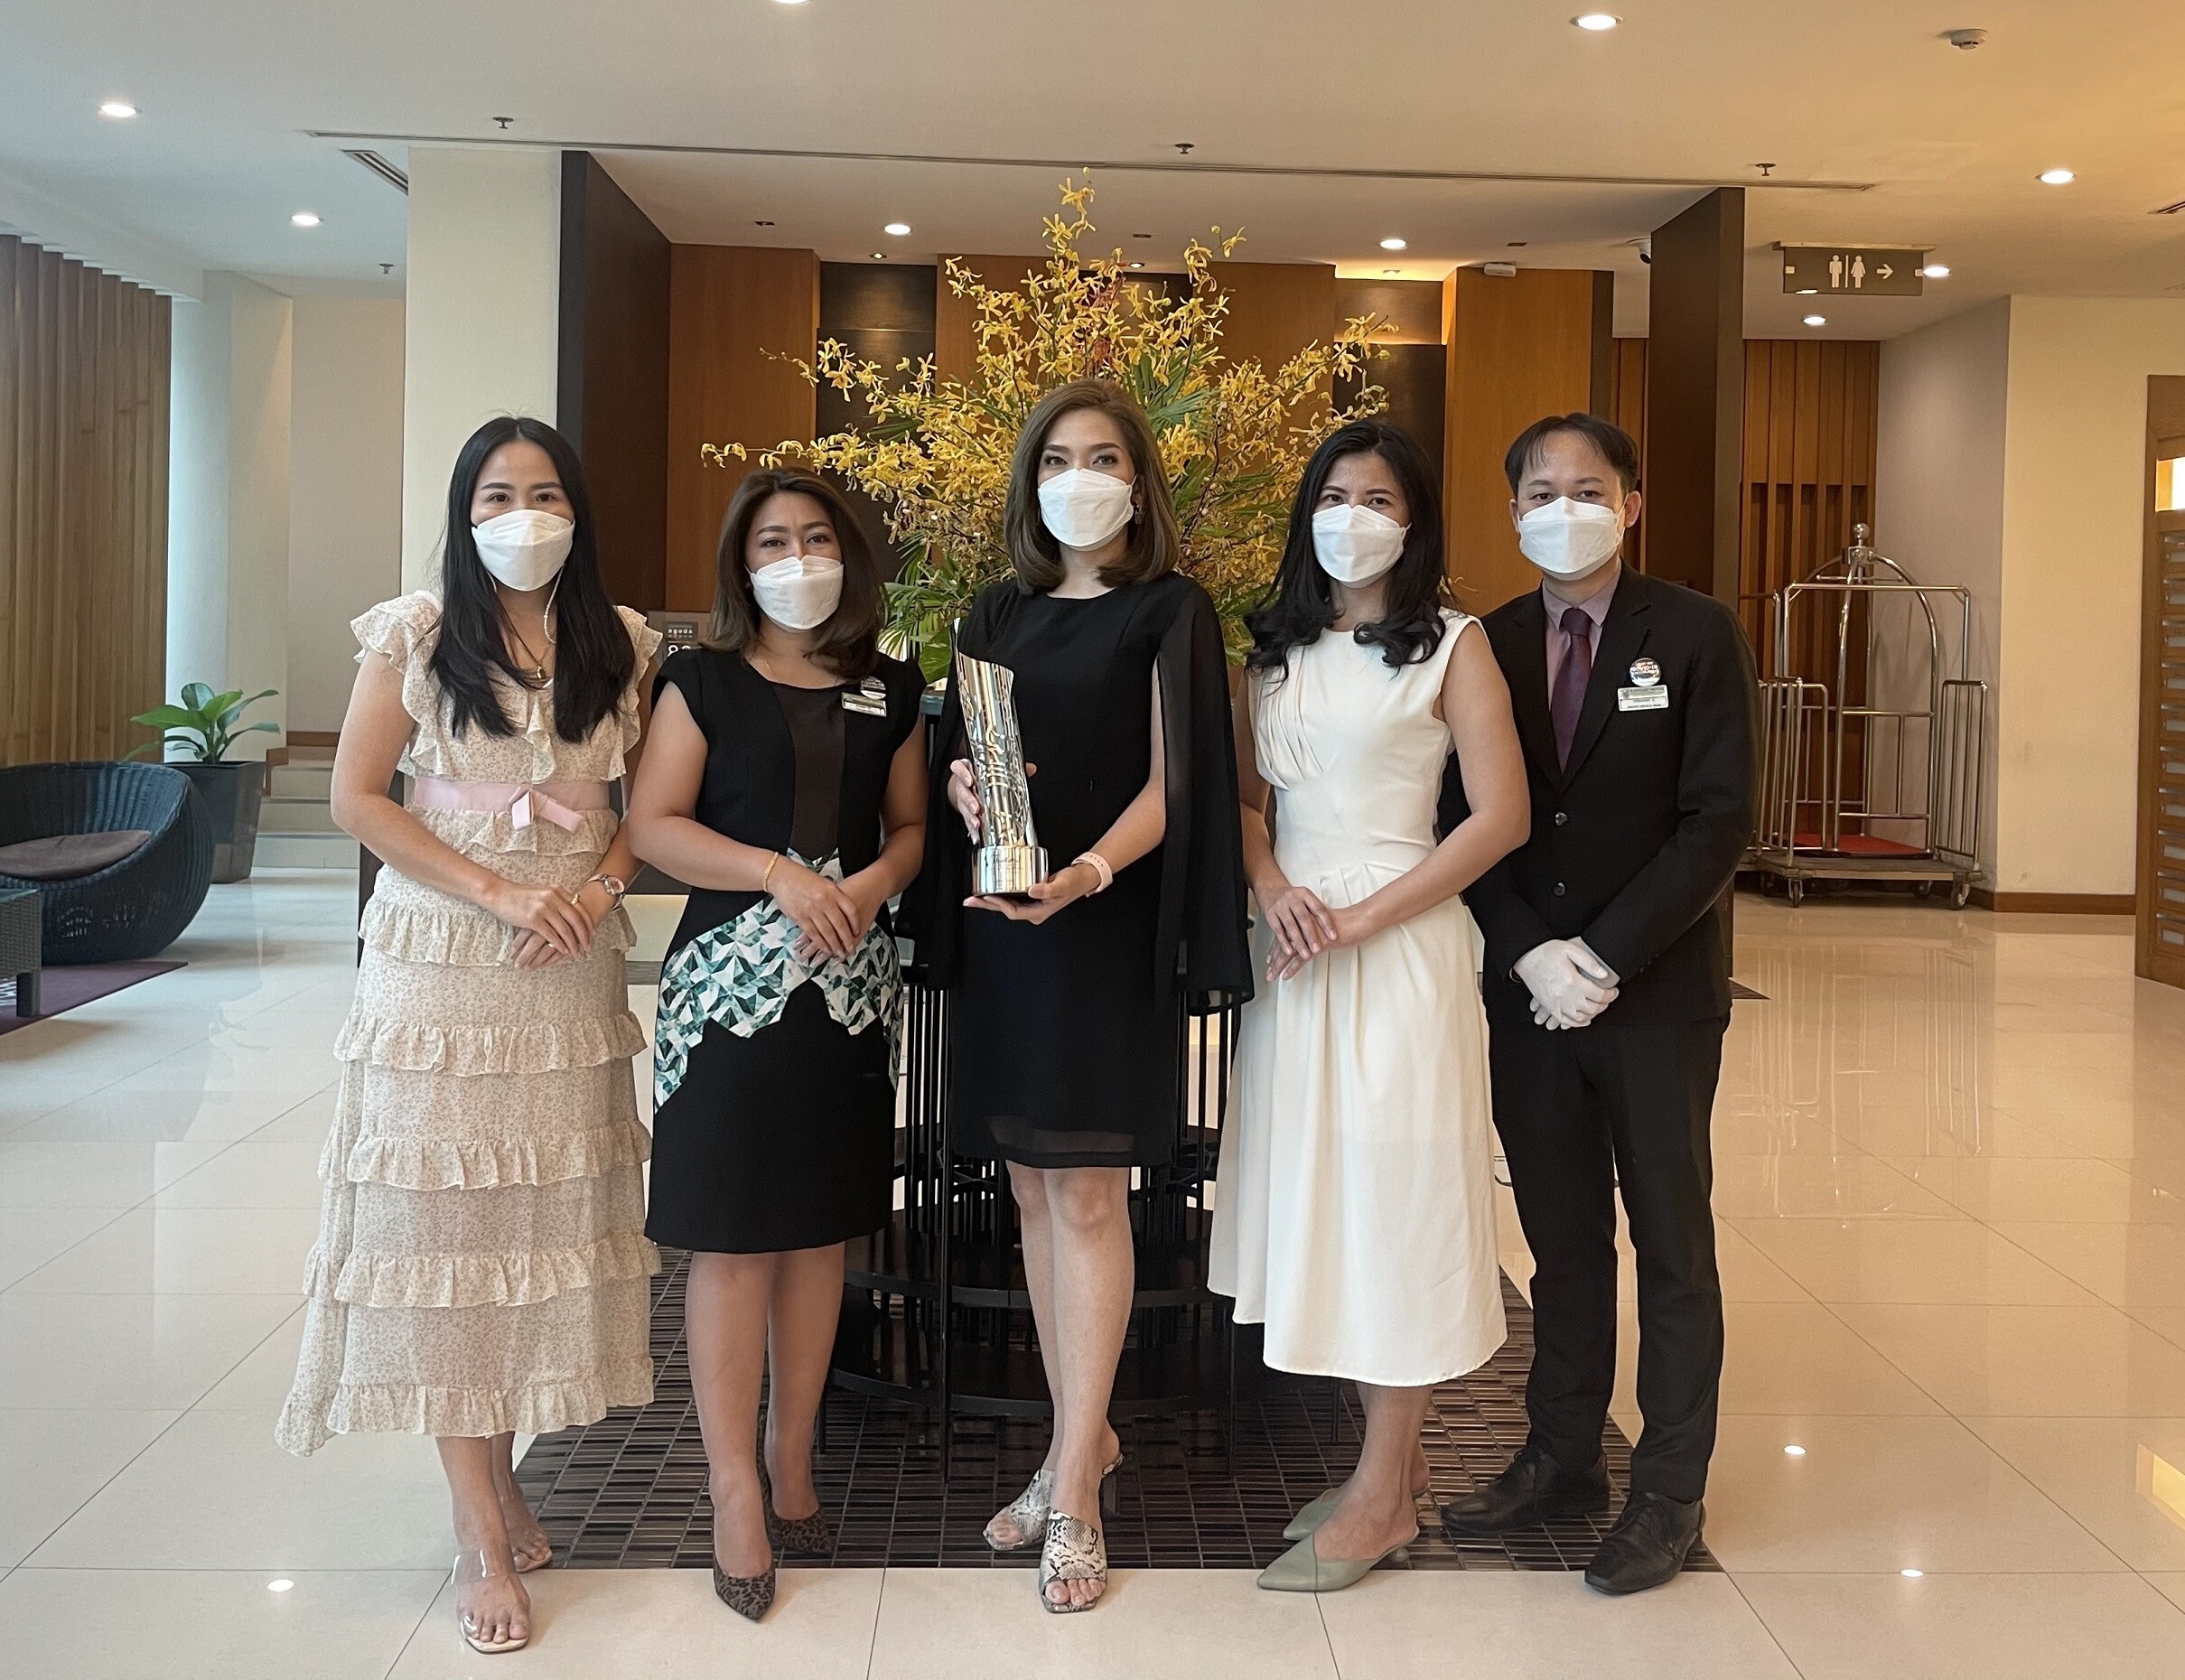 โรงแรมแคนทารี อยุธยา รับรางวัลอุตสาหกรรมท่องเที่ยวไทย ครั้งที่ 13 จากการท่องเที่ยวแห่งประเทศไทย